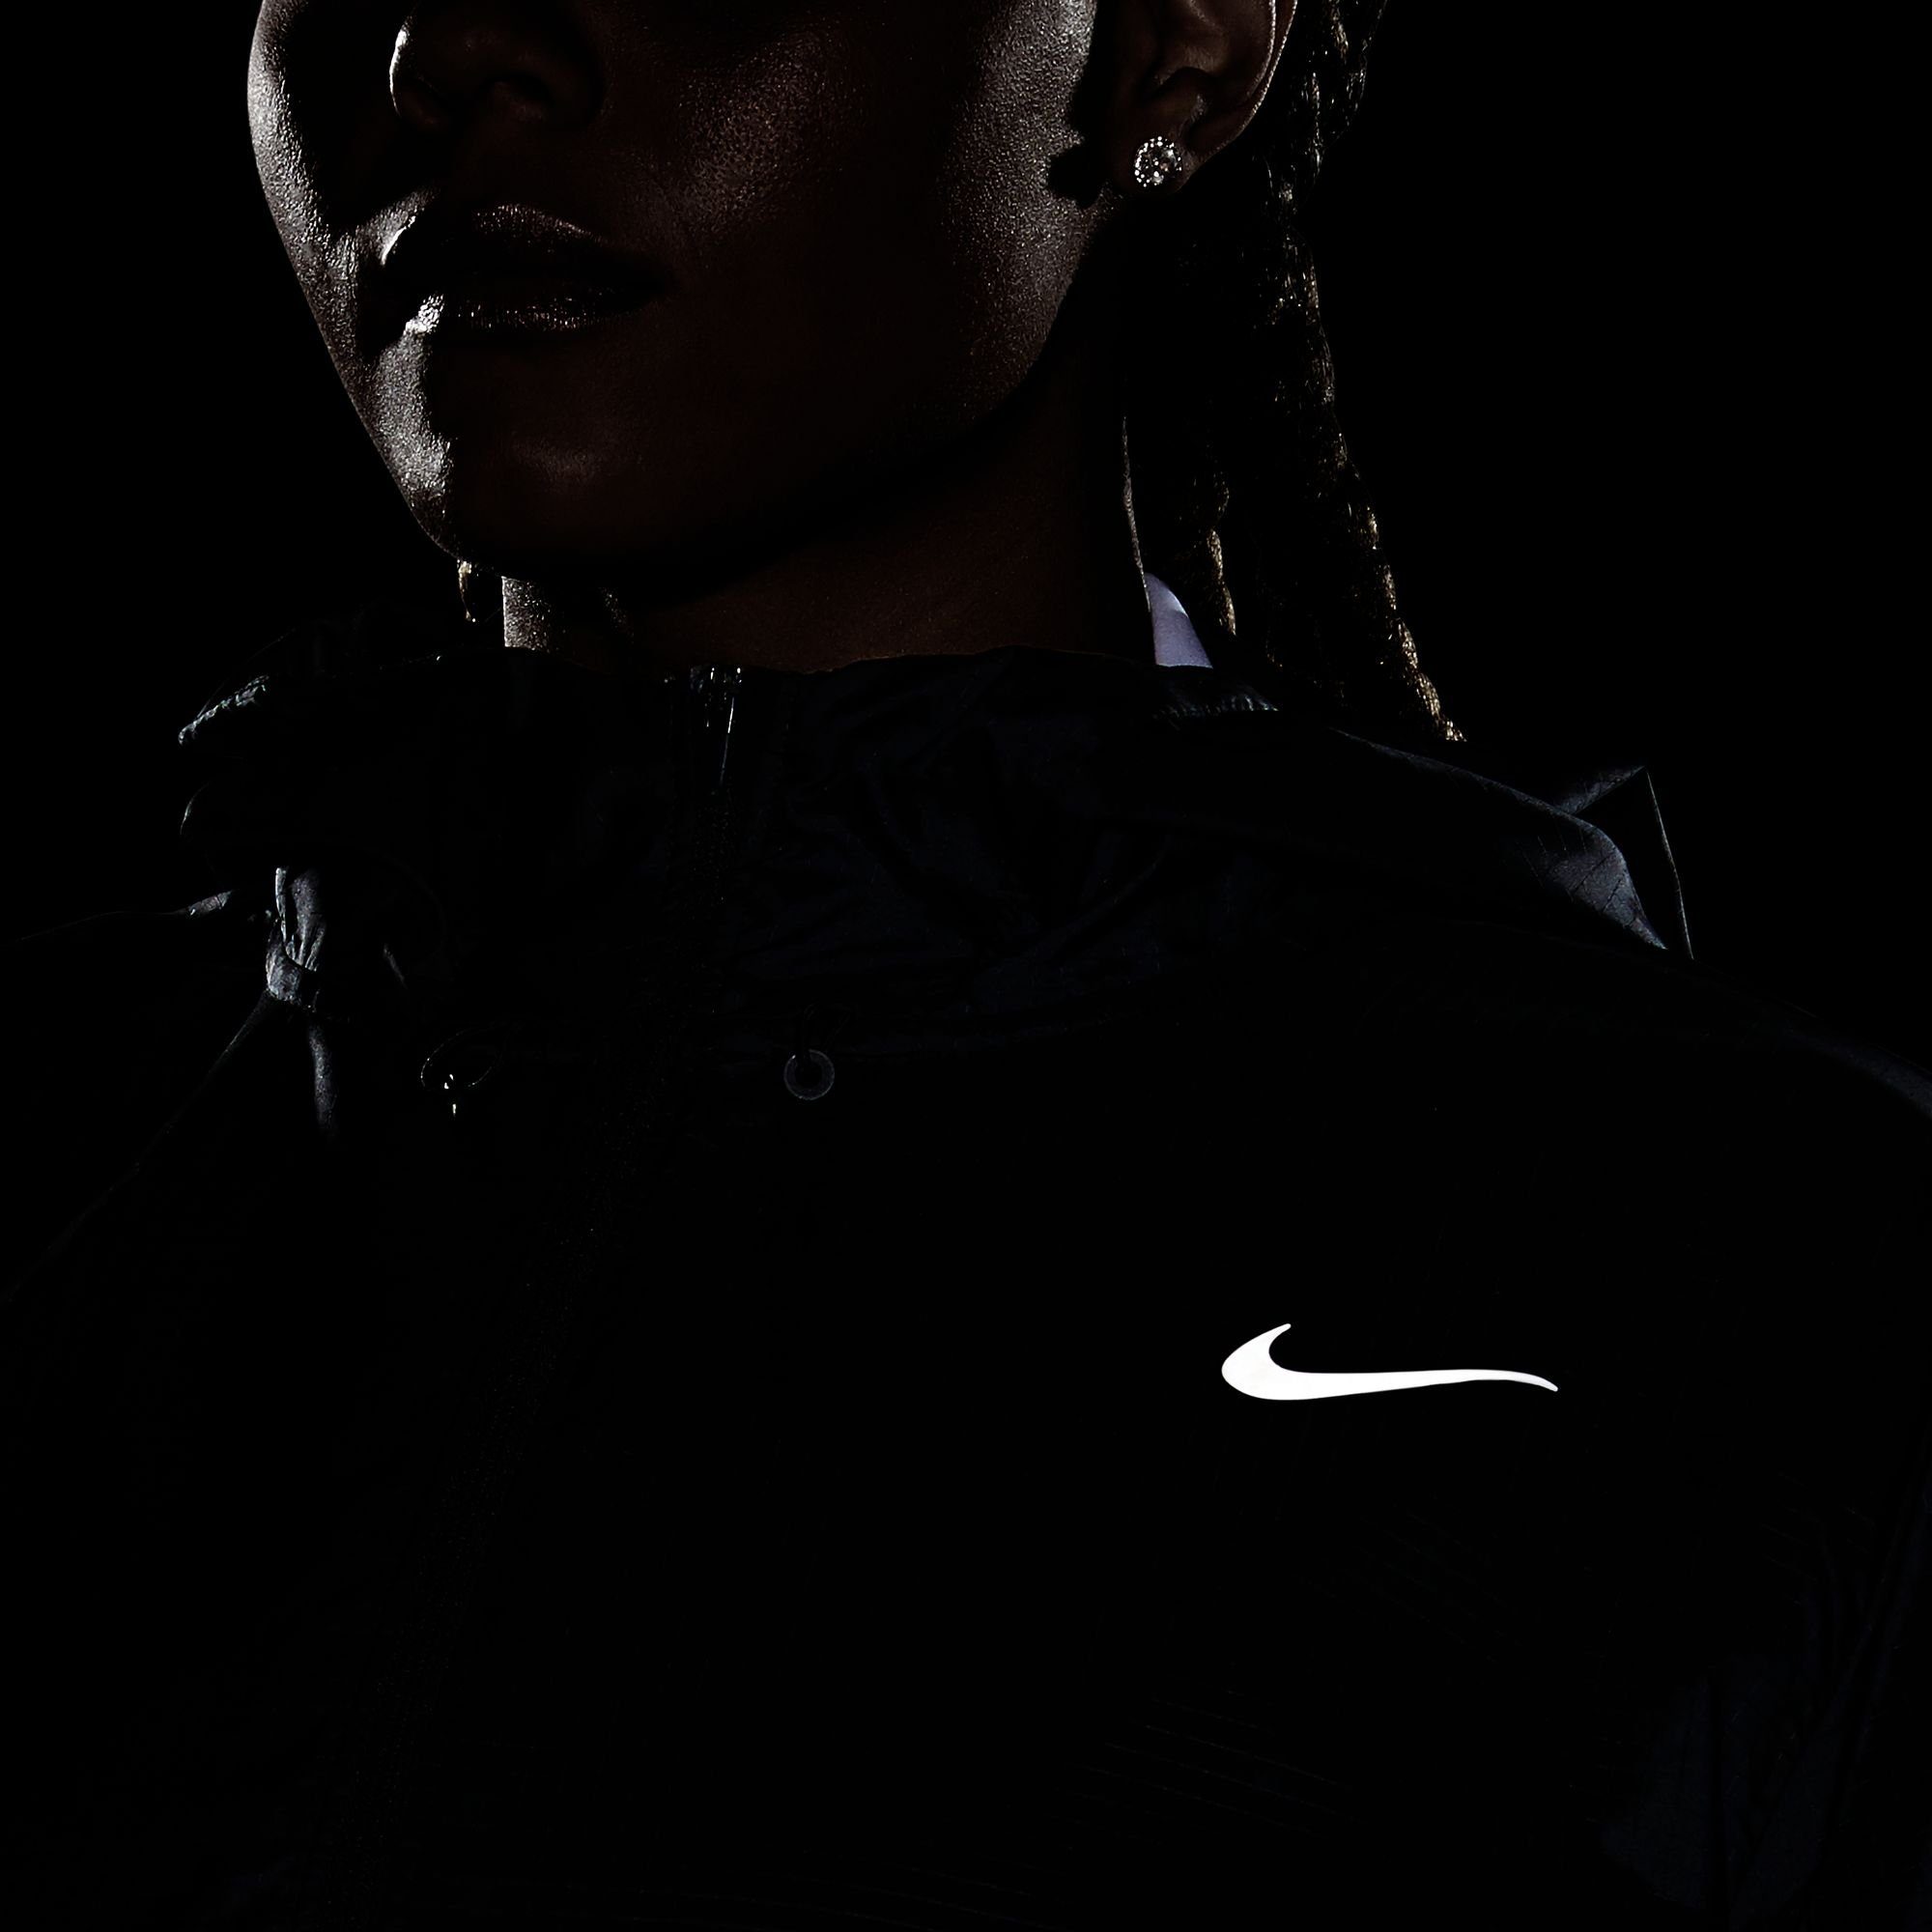 schwarz Nike Essential Running Women's Laufjacke Jacket